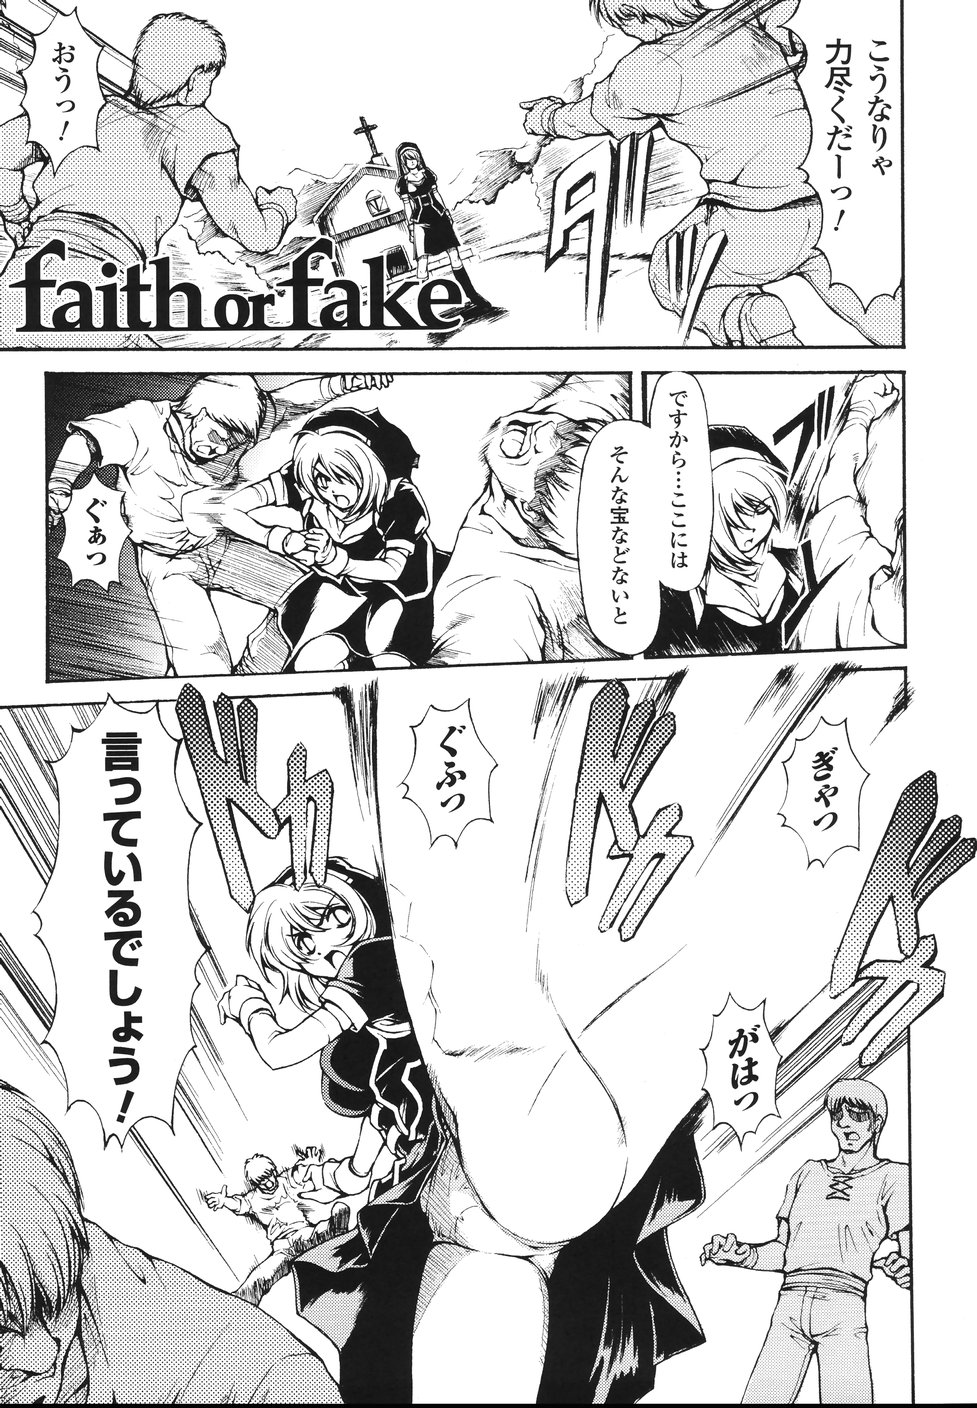 [科手黒] faith or fake